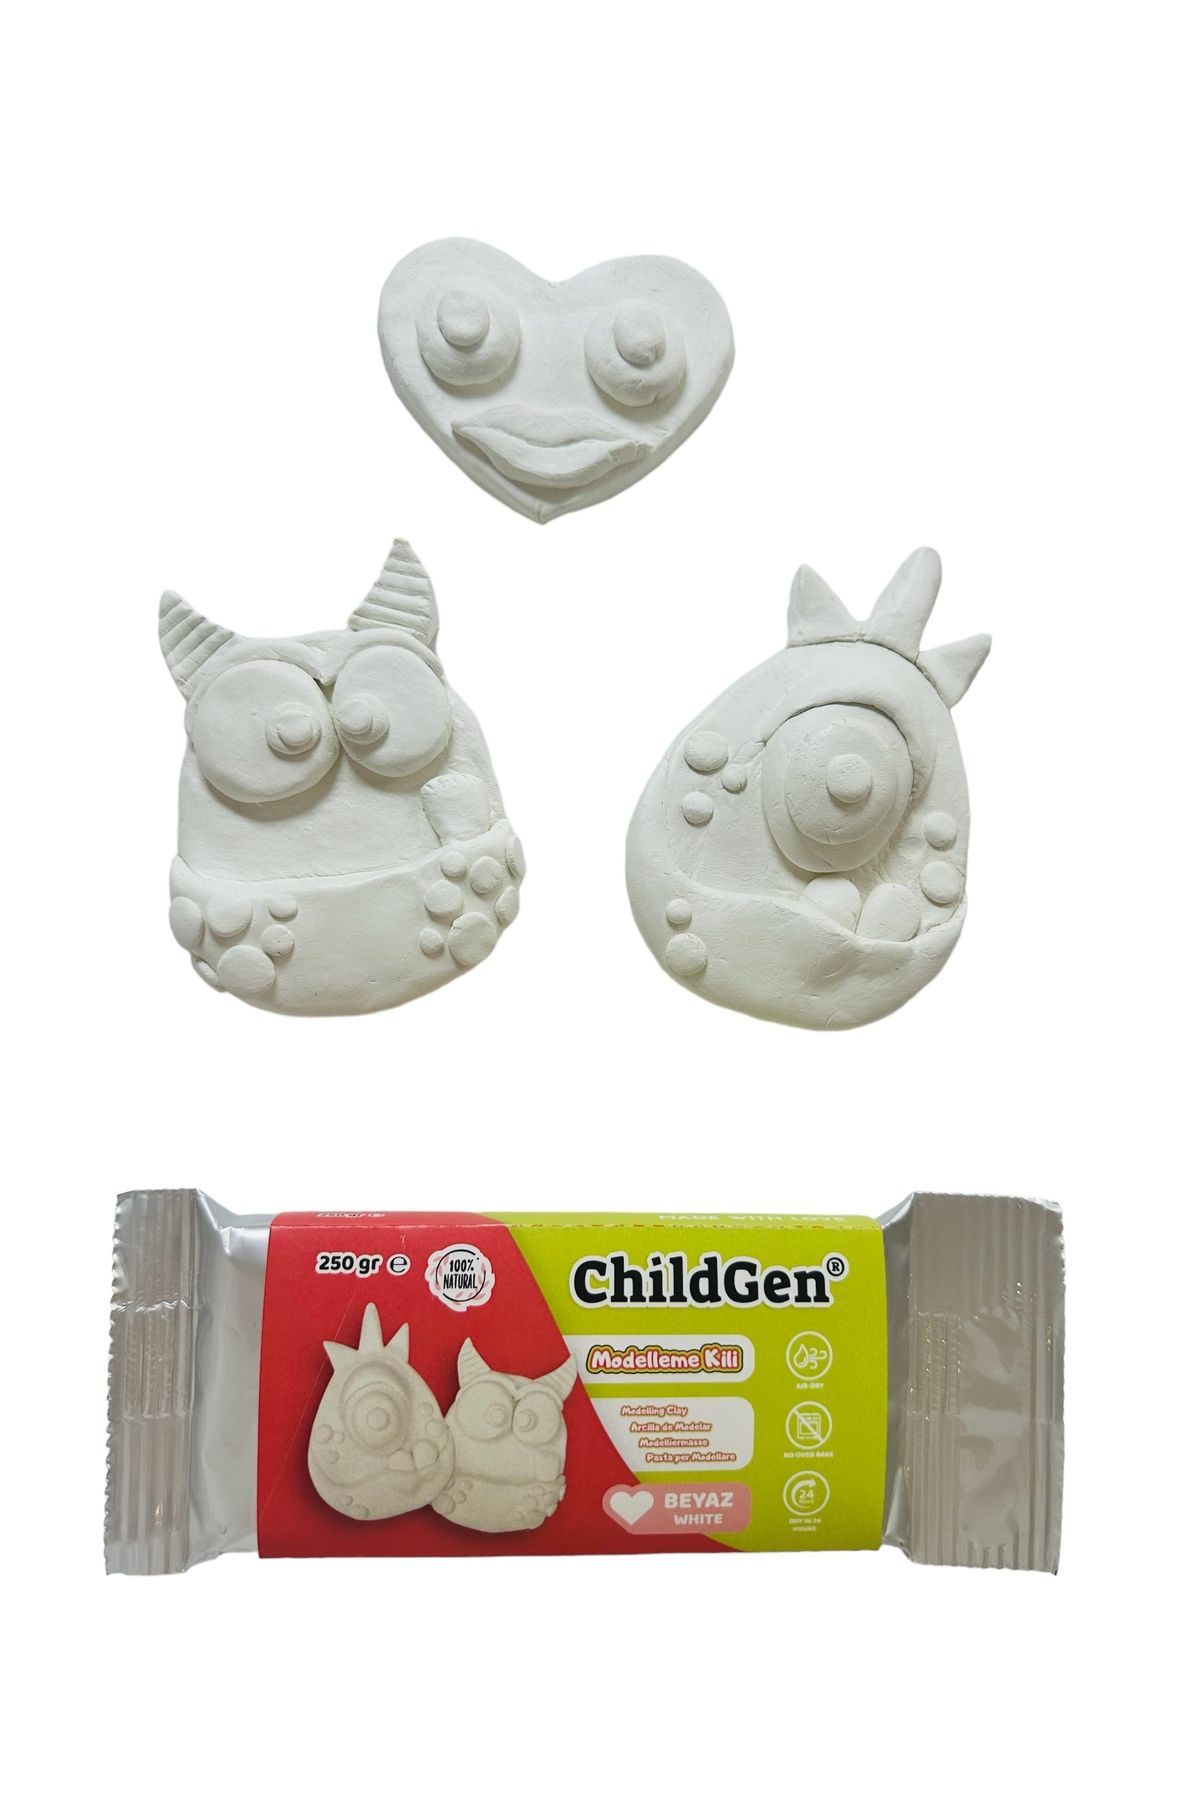 ChildGen Doğal Modelleme Kili (Modelling Clay), Hava ile Kurur (Air-dry), Beyaz